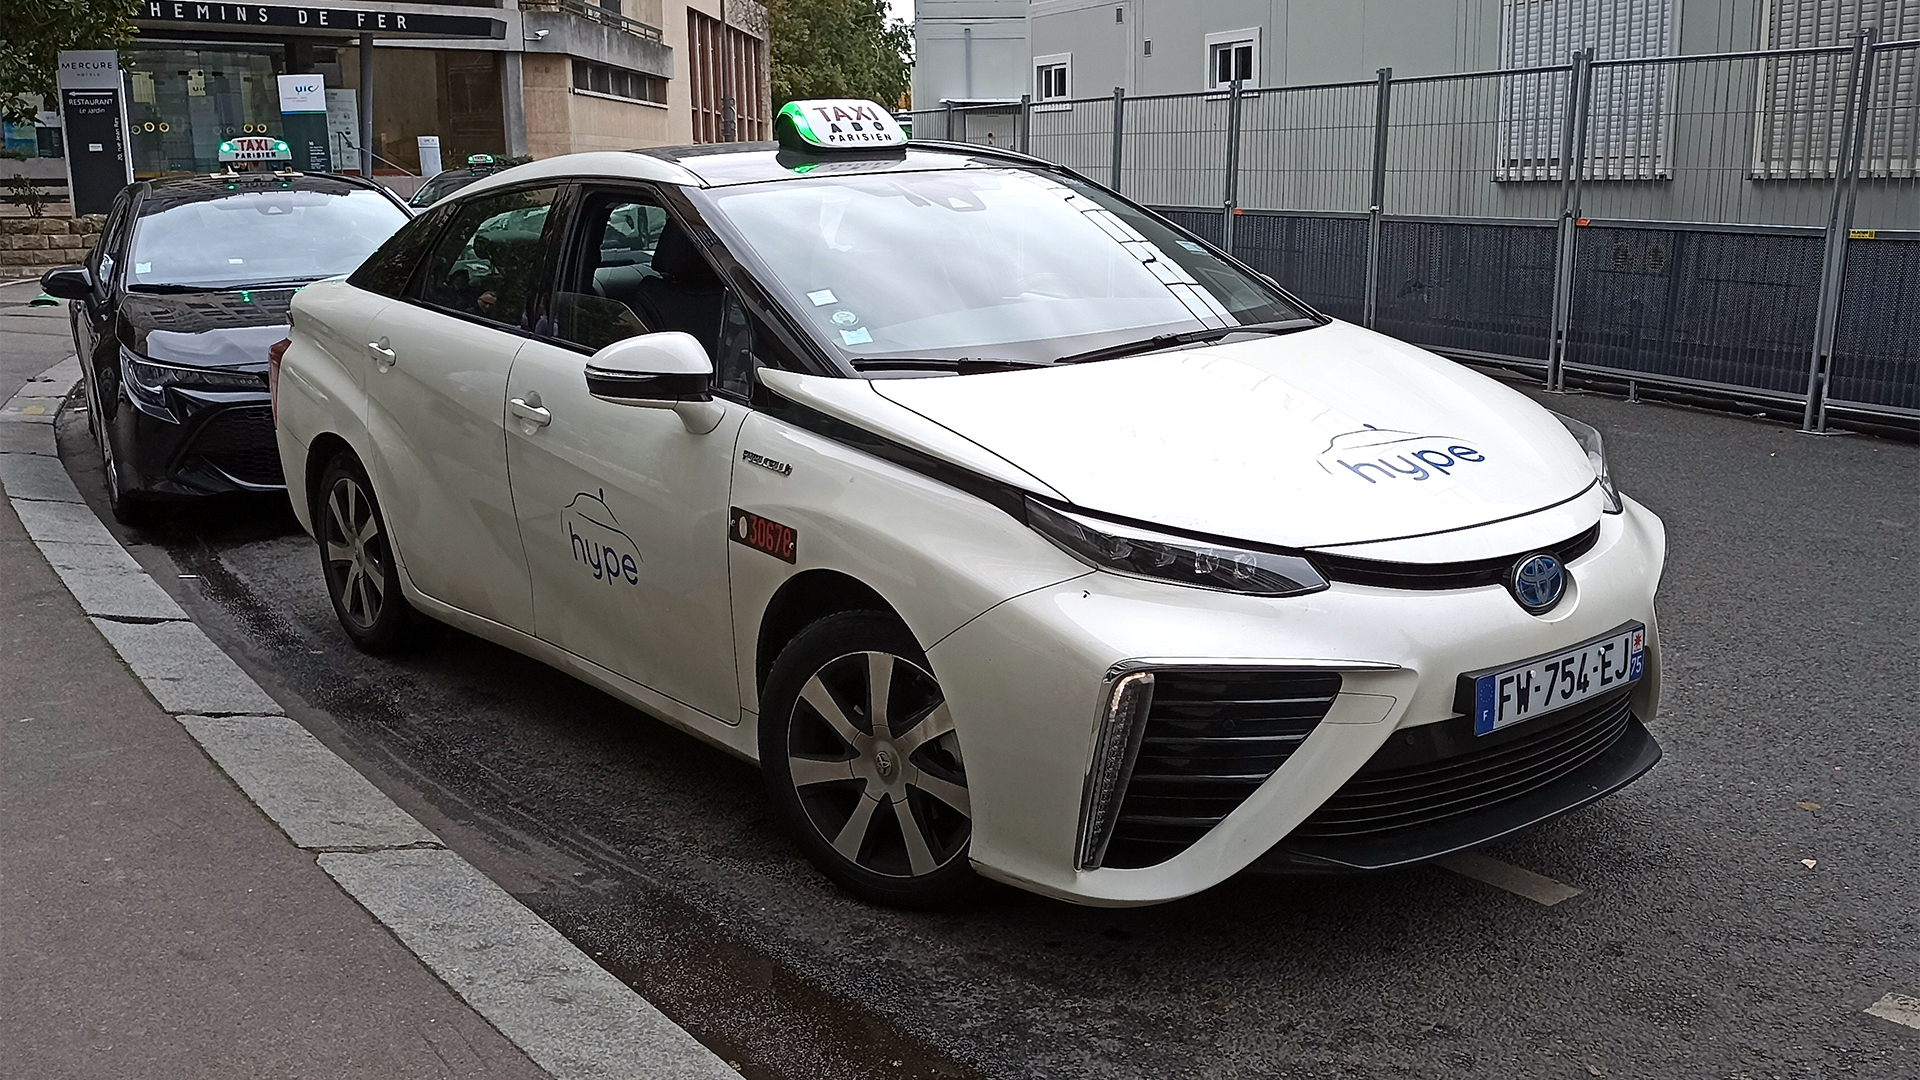 Muchas otras ciudades europeas adoptaron la propulsión a través de hidrógeno, como París, donde ya se ven en la calle los Toyota Mirai transportando pasajeros